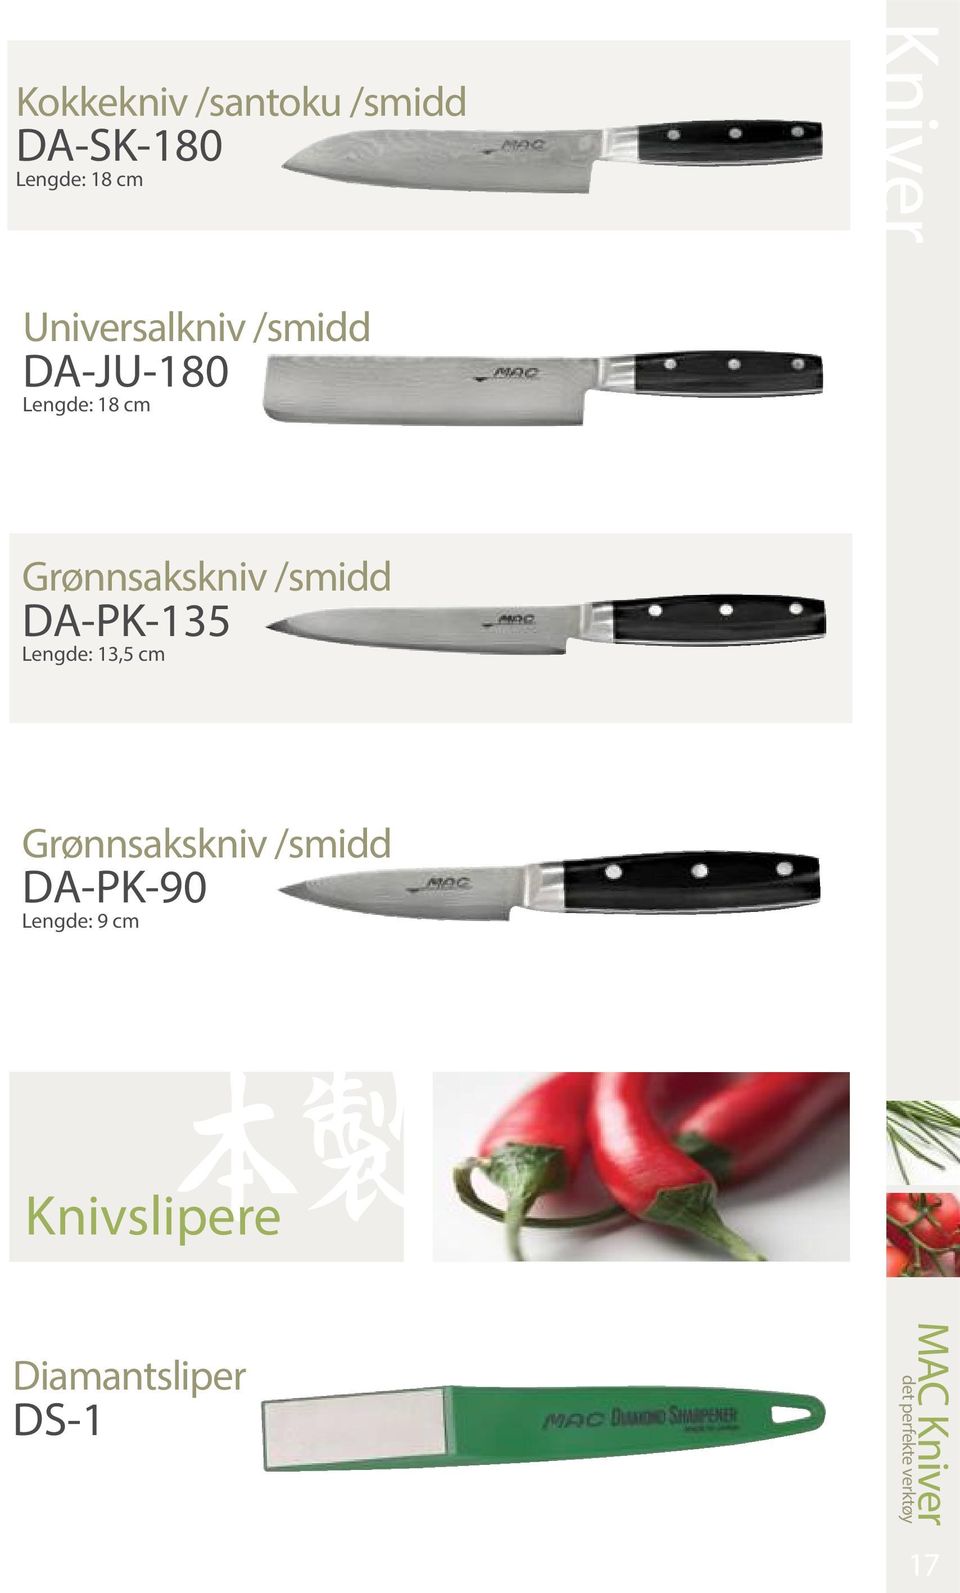 Grønnsakskniv /smidd DA-PK-135 Lengde: 13,5 cm